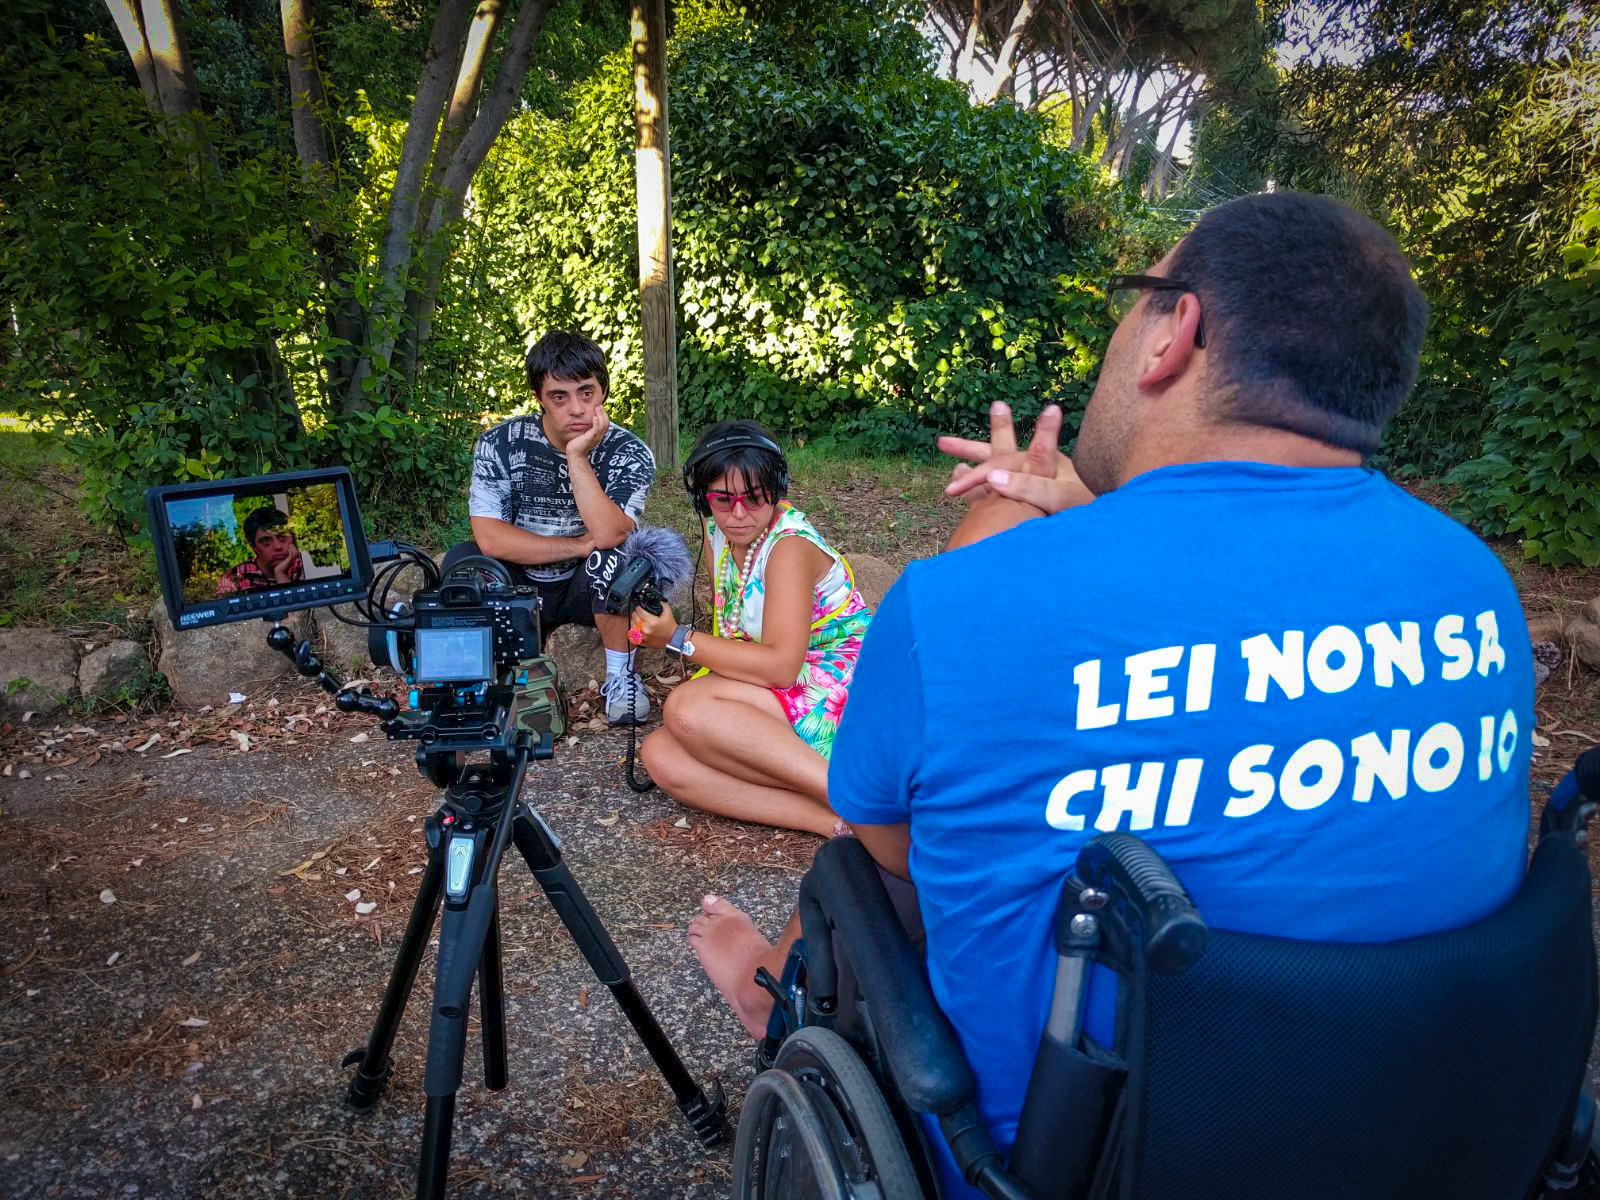 sulla sedia del regista, Luca indossa una maglietta con la scritta "Lei non sa chi sono io" mentre intervista Andrea